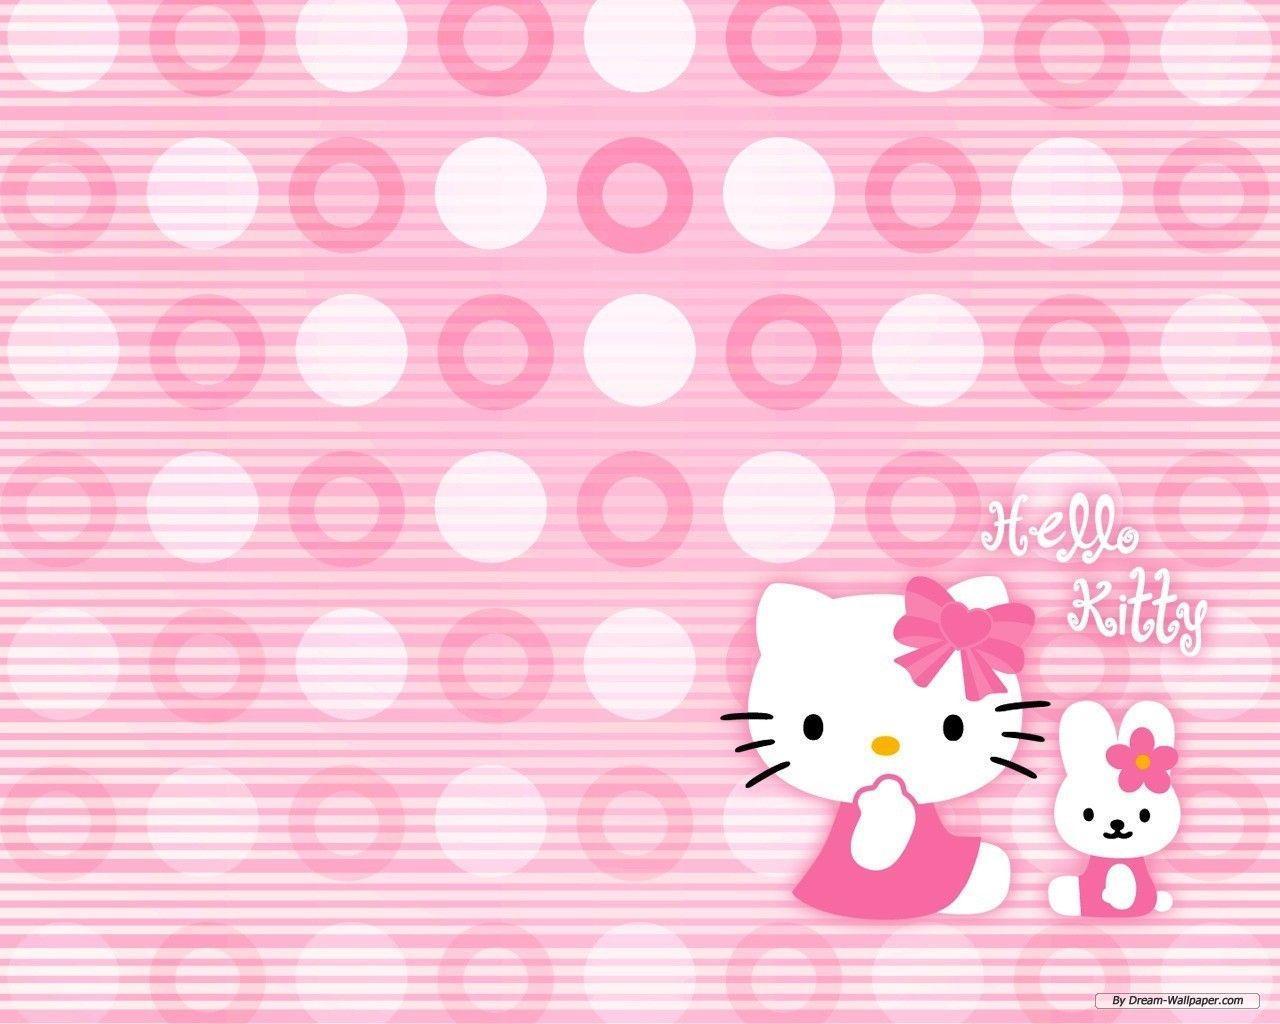 Tumblr Hello Kitty Desktop Wallpaper Free Tumblr Hello